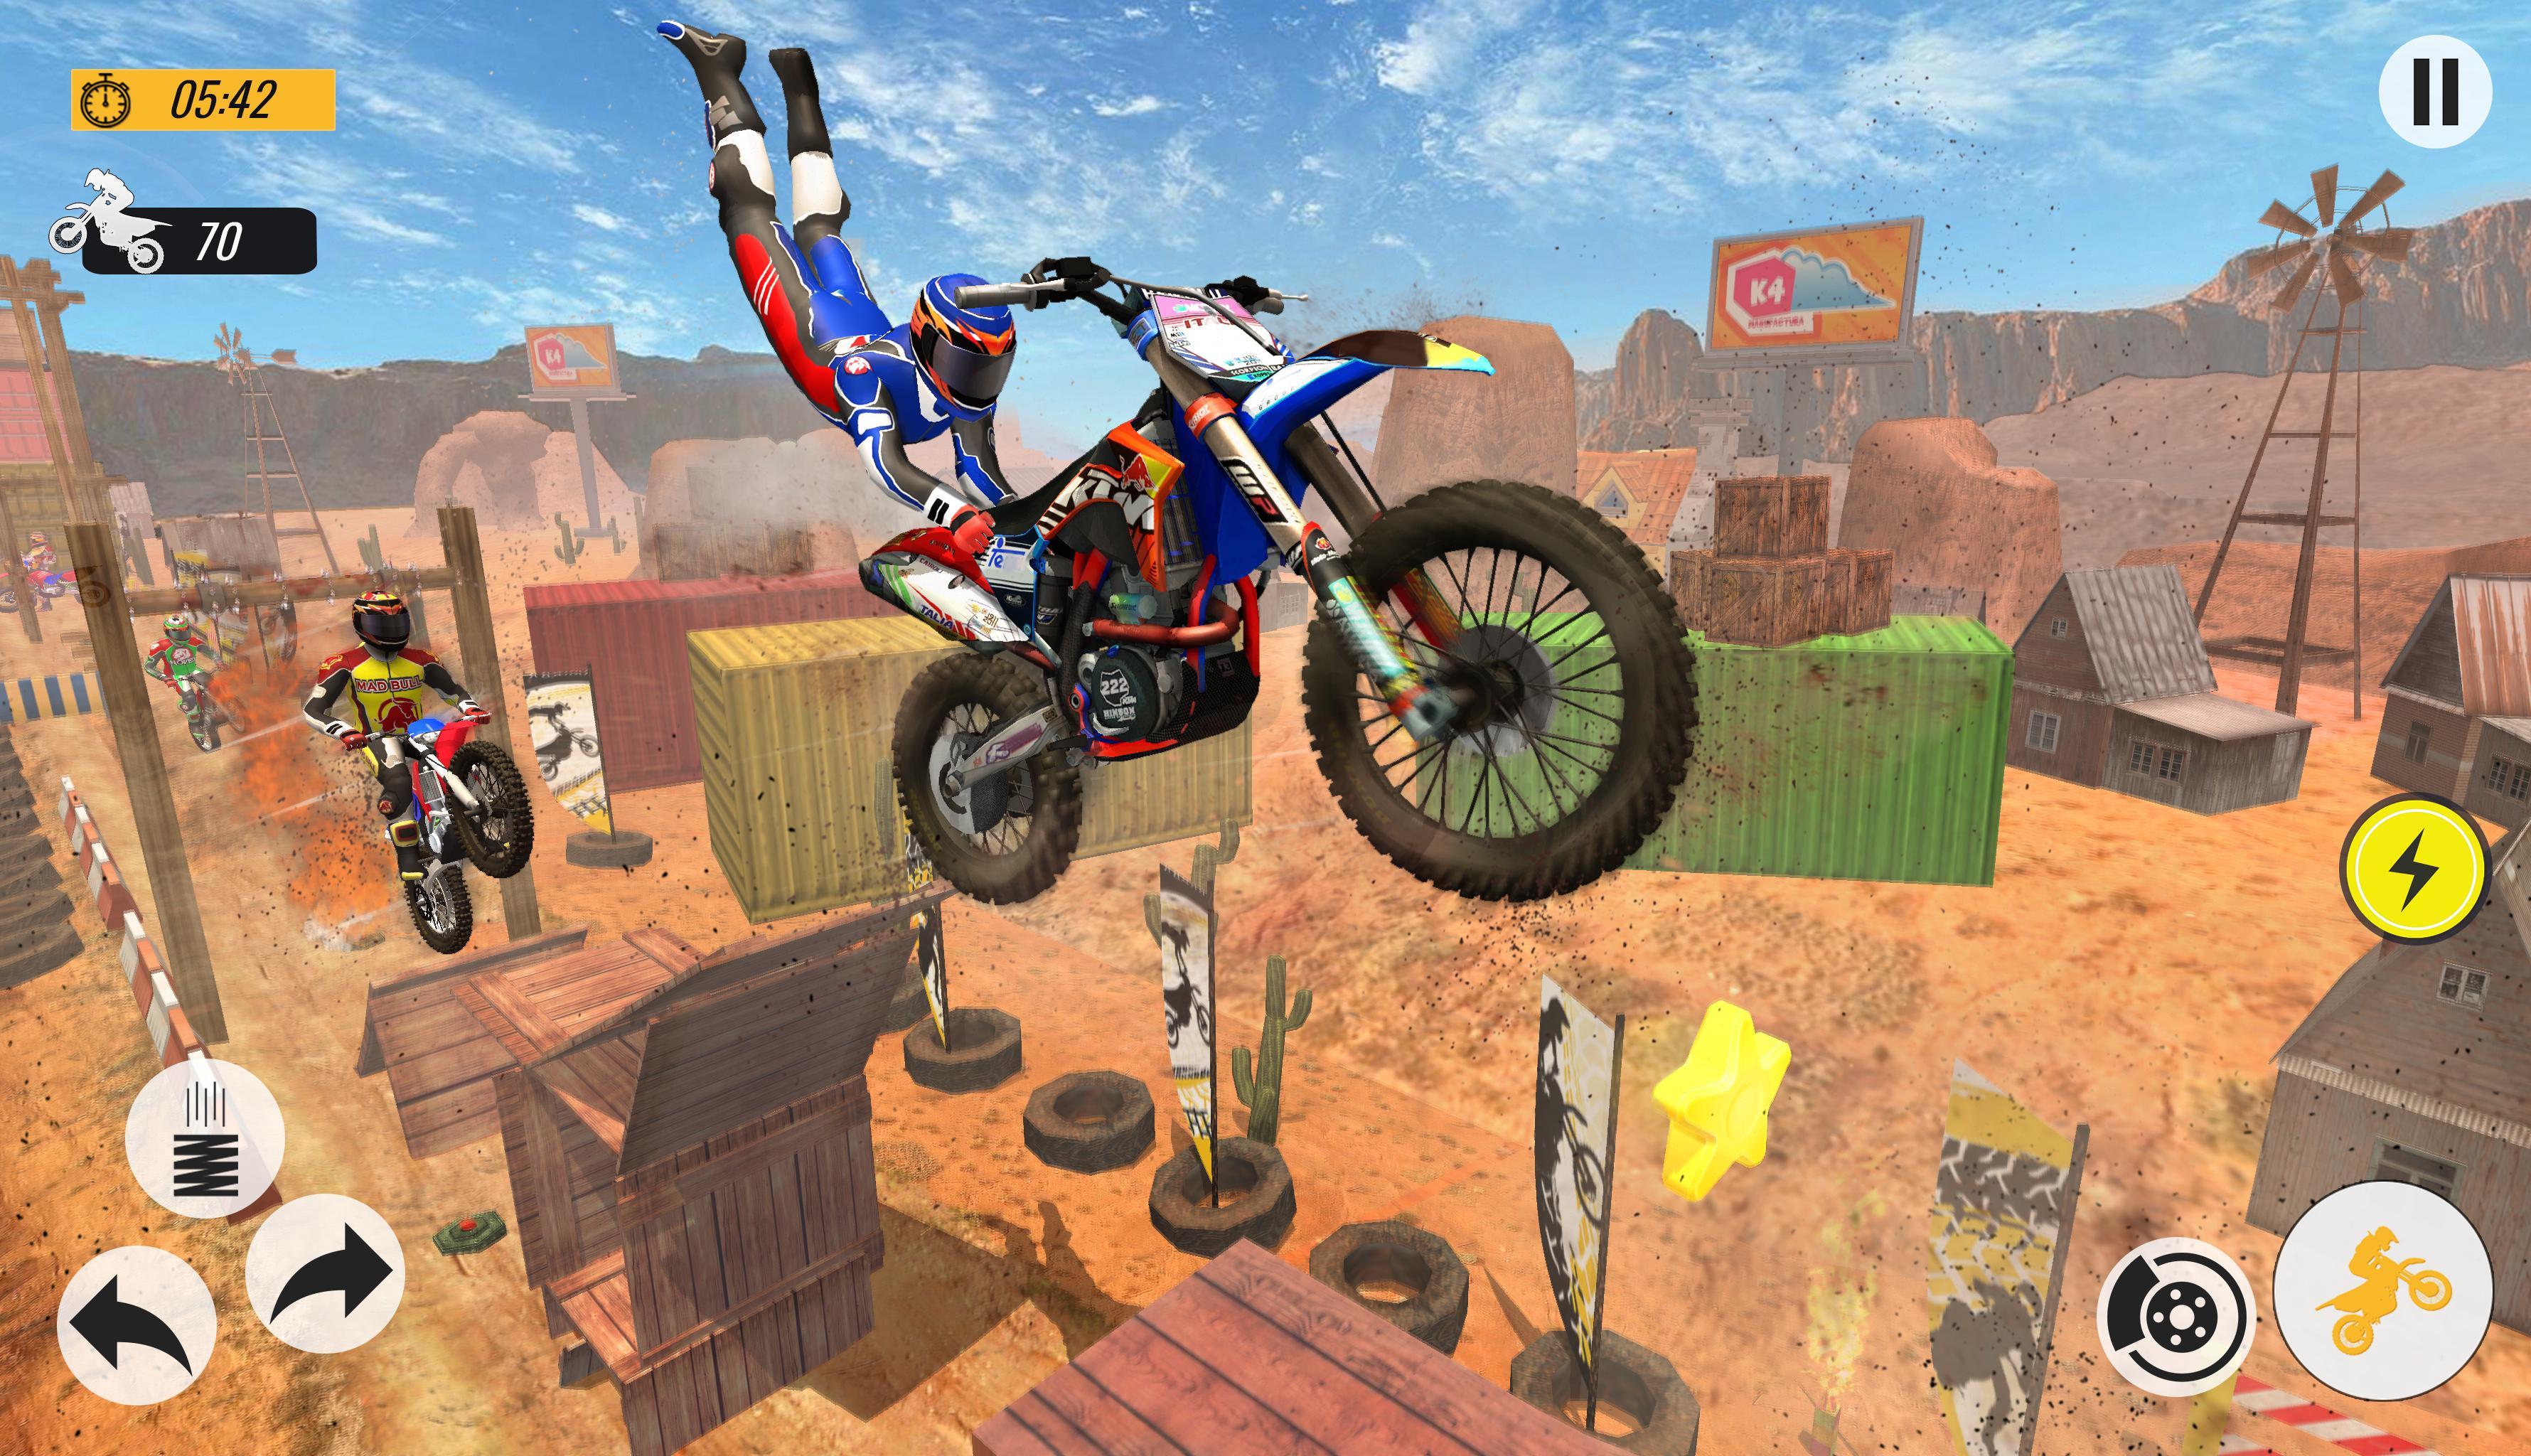 Bike Stunts 3D Racing Stunts Game Free Bike Games 11.9 Screenshot 16